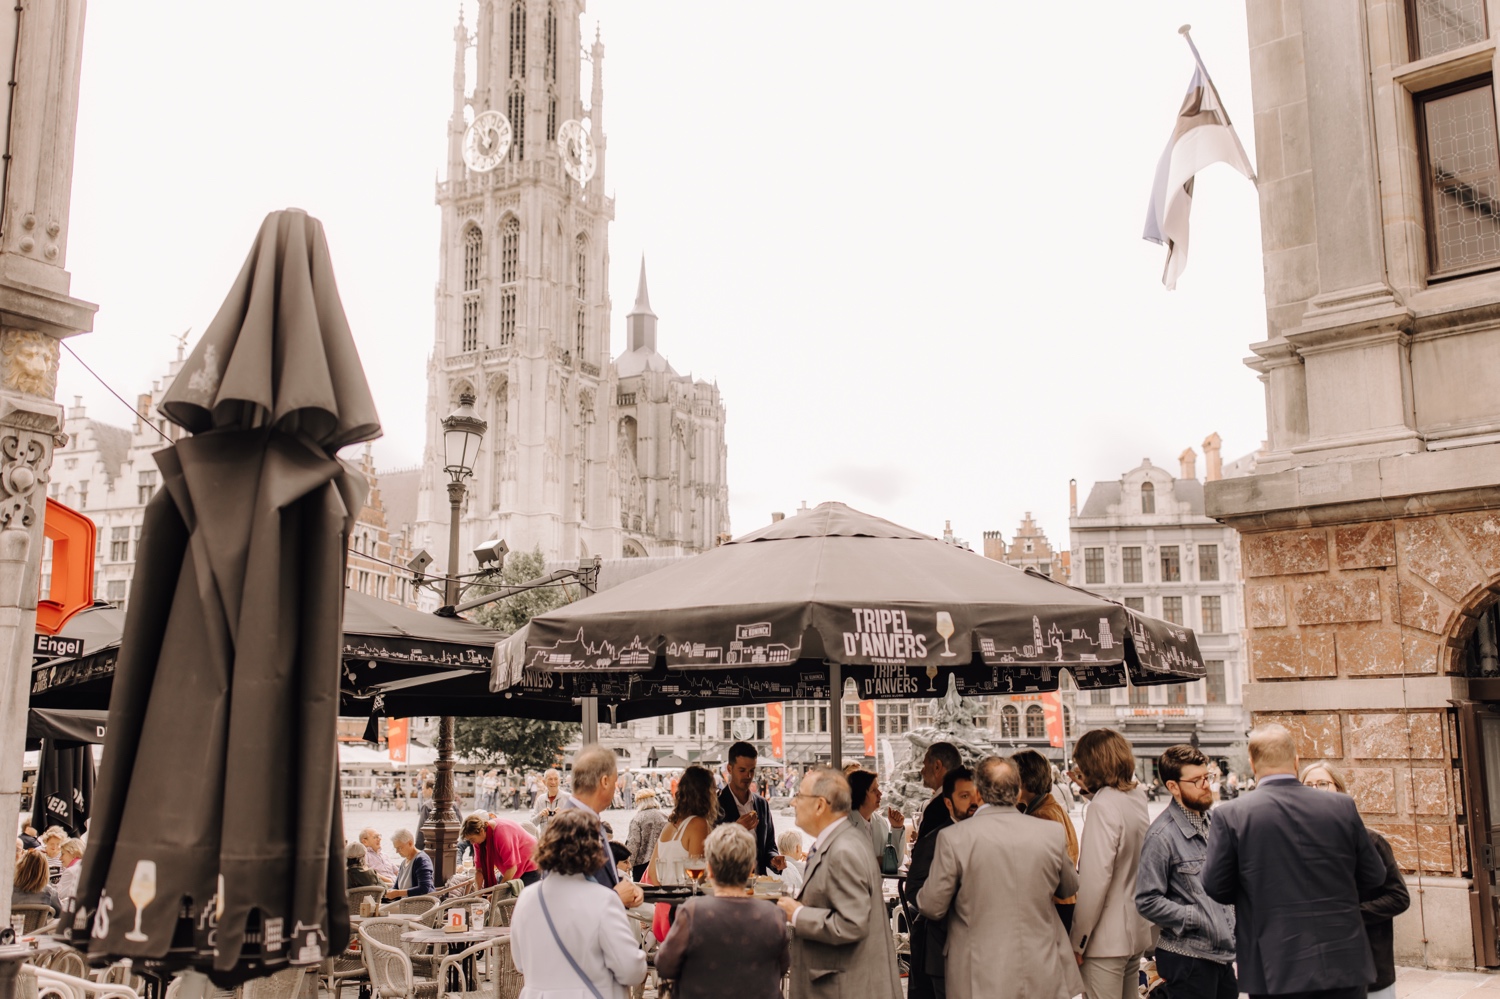 overzichtsfoto aan café Den Engel in Antwerpen